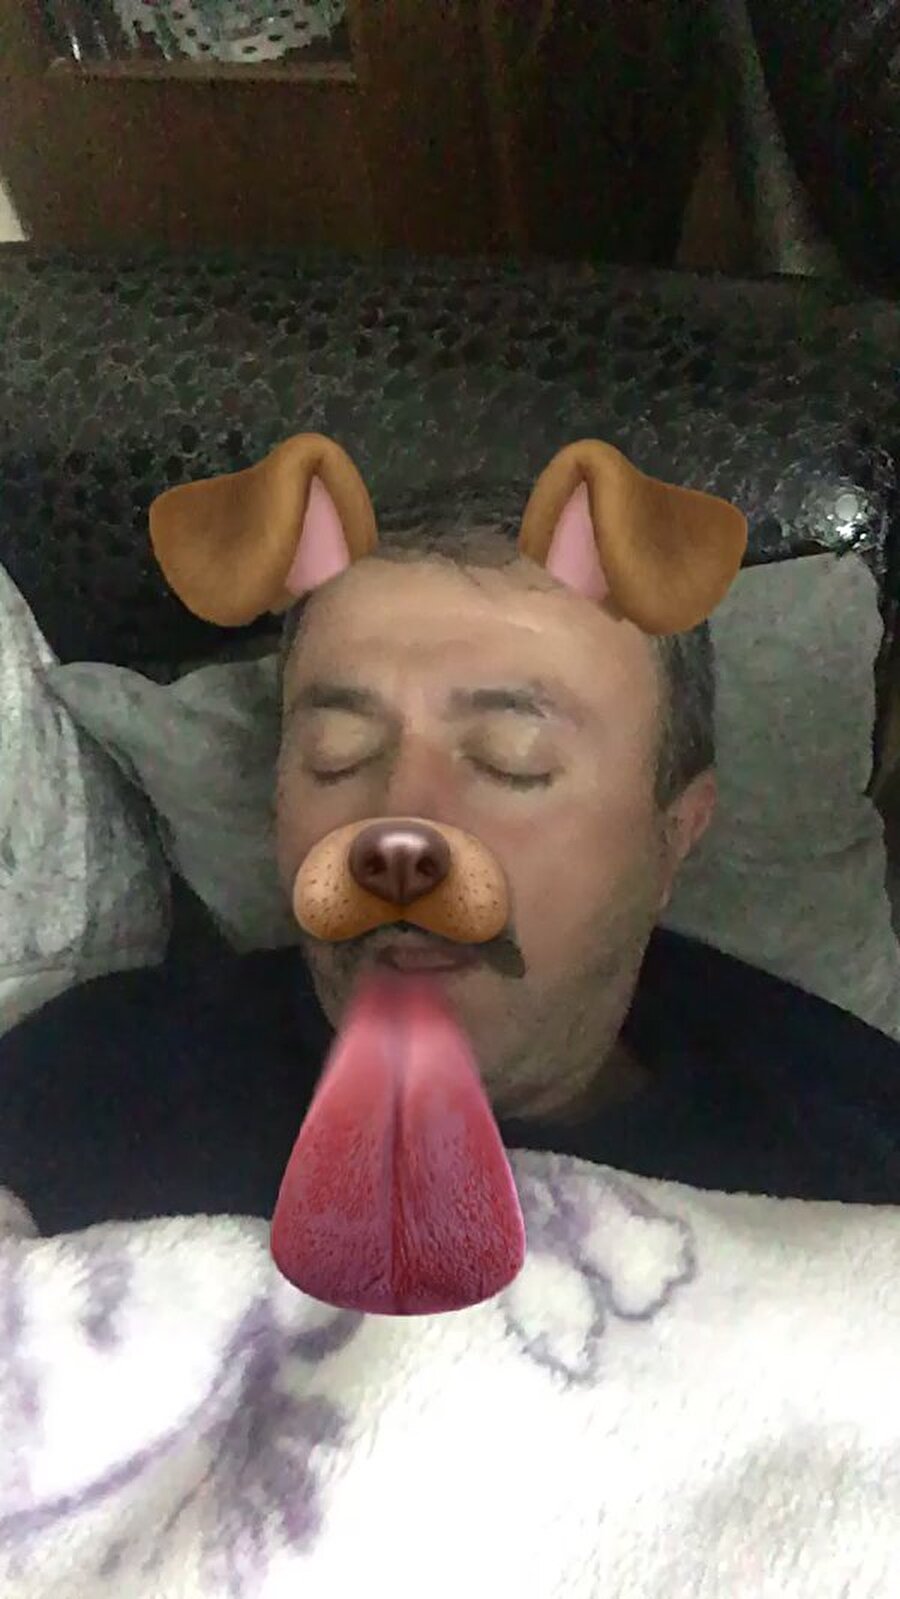 Snapchat filtre kurbanı bir baba...

                                    
                                    
                                    
                                    
                                
                                
                                
                                